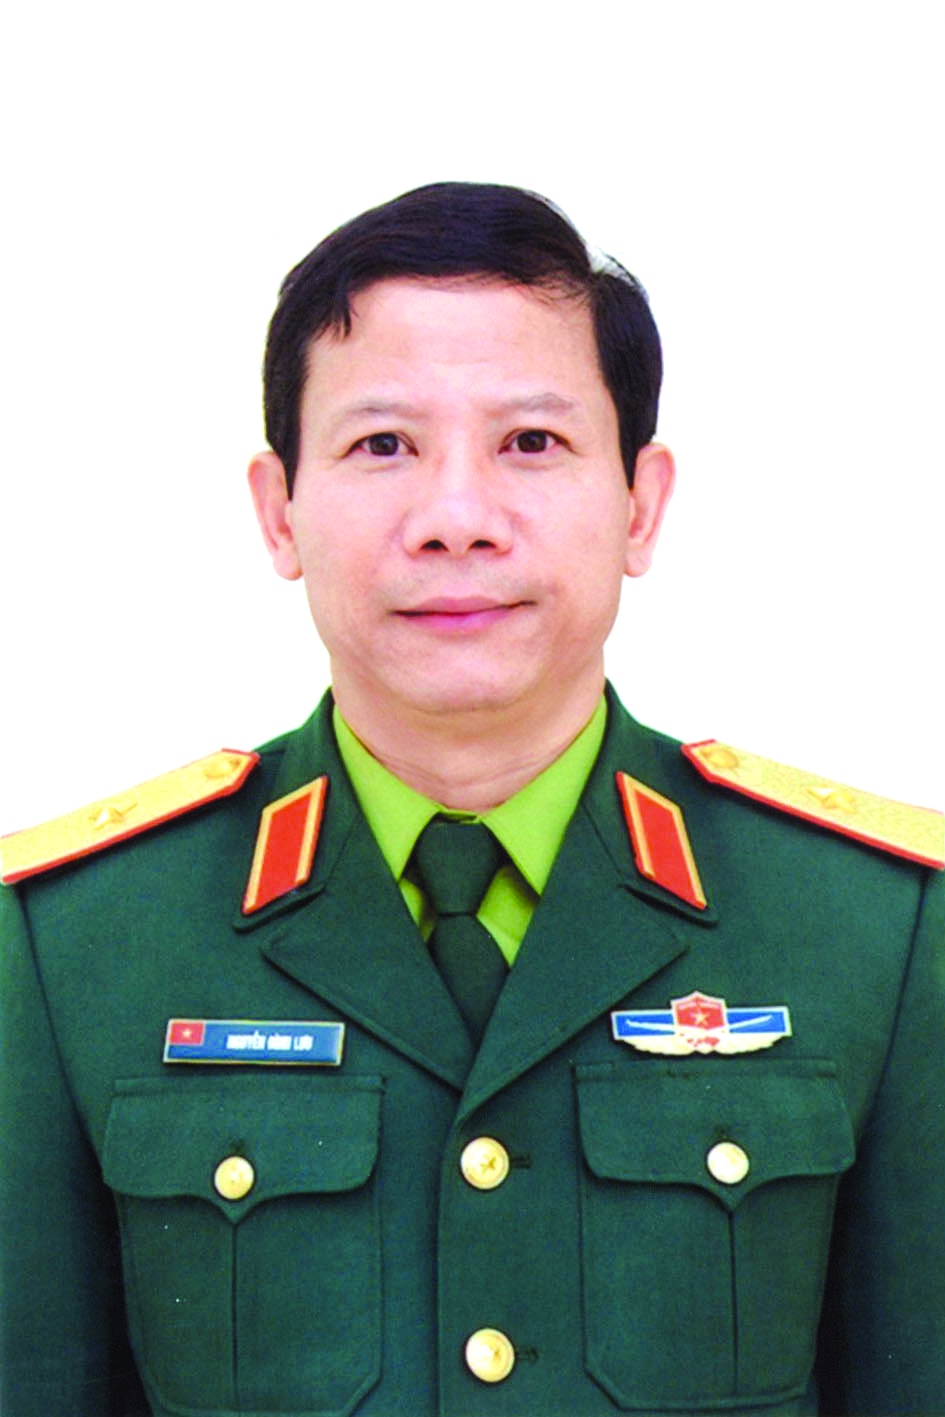 Chương trình hành động của Phó tư lệnh Bộ Tư lệnh Thủ đô Hà Nội Nguyễn Đình Lưu, ứng cử viên đại biểu HĐND TP Hà Nội nhiệm kỳ 2021 - 2026 - Ảnh 1